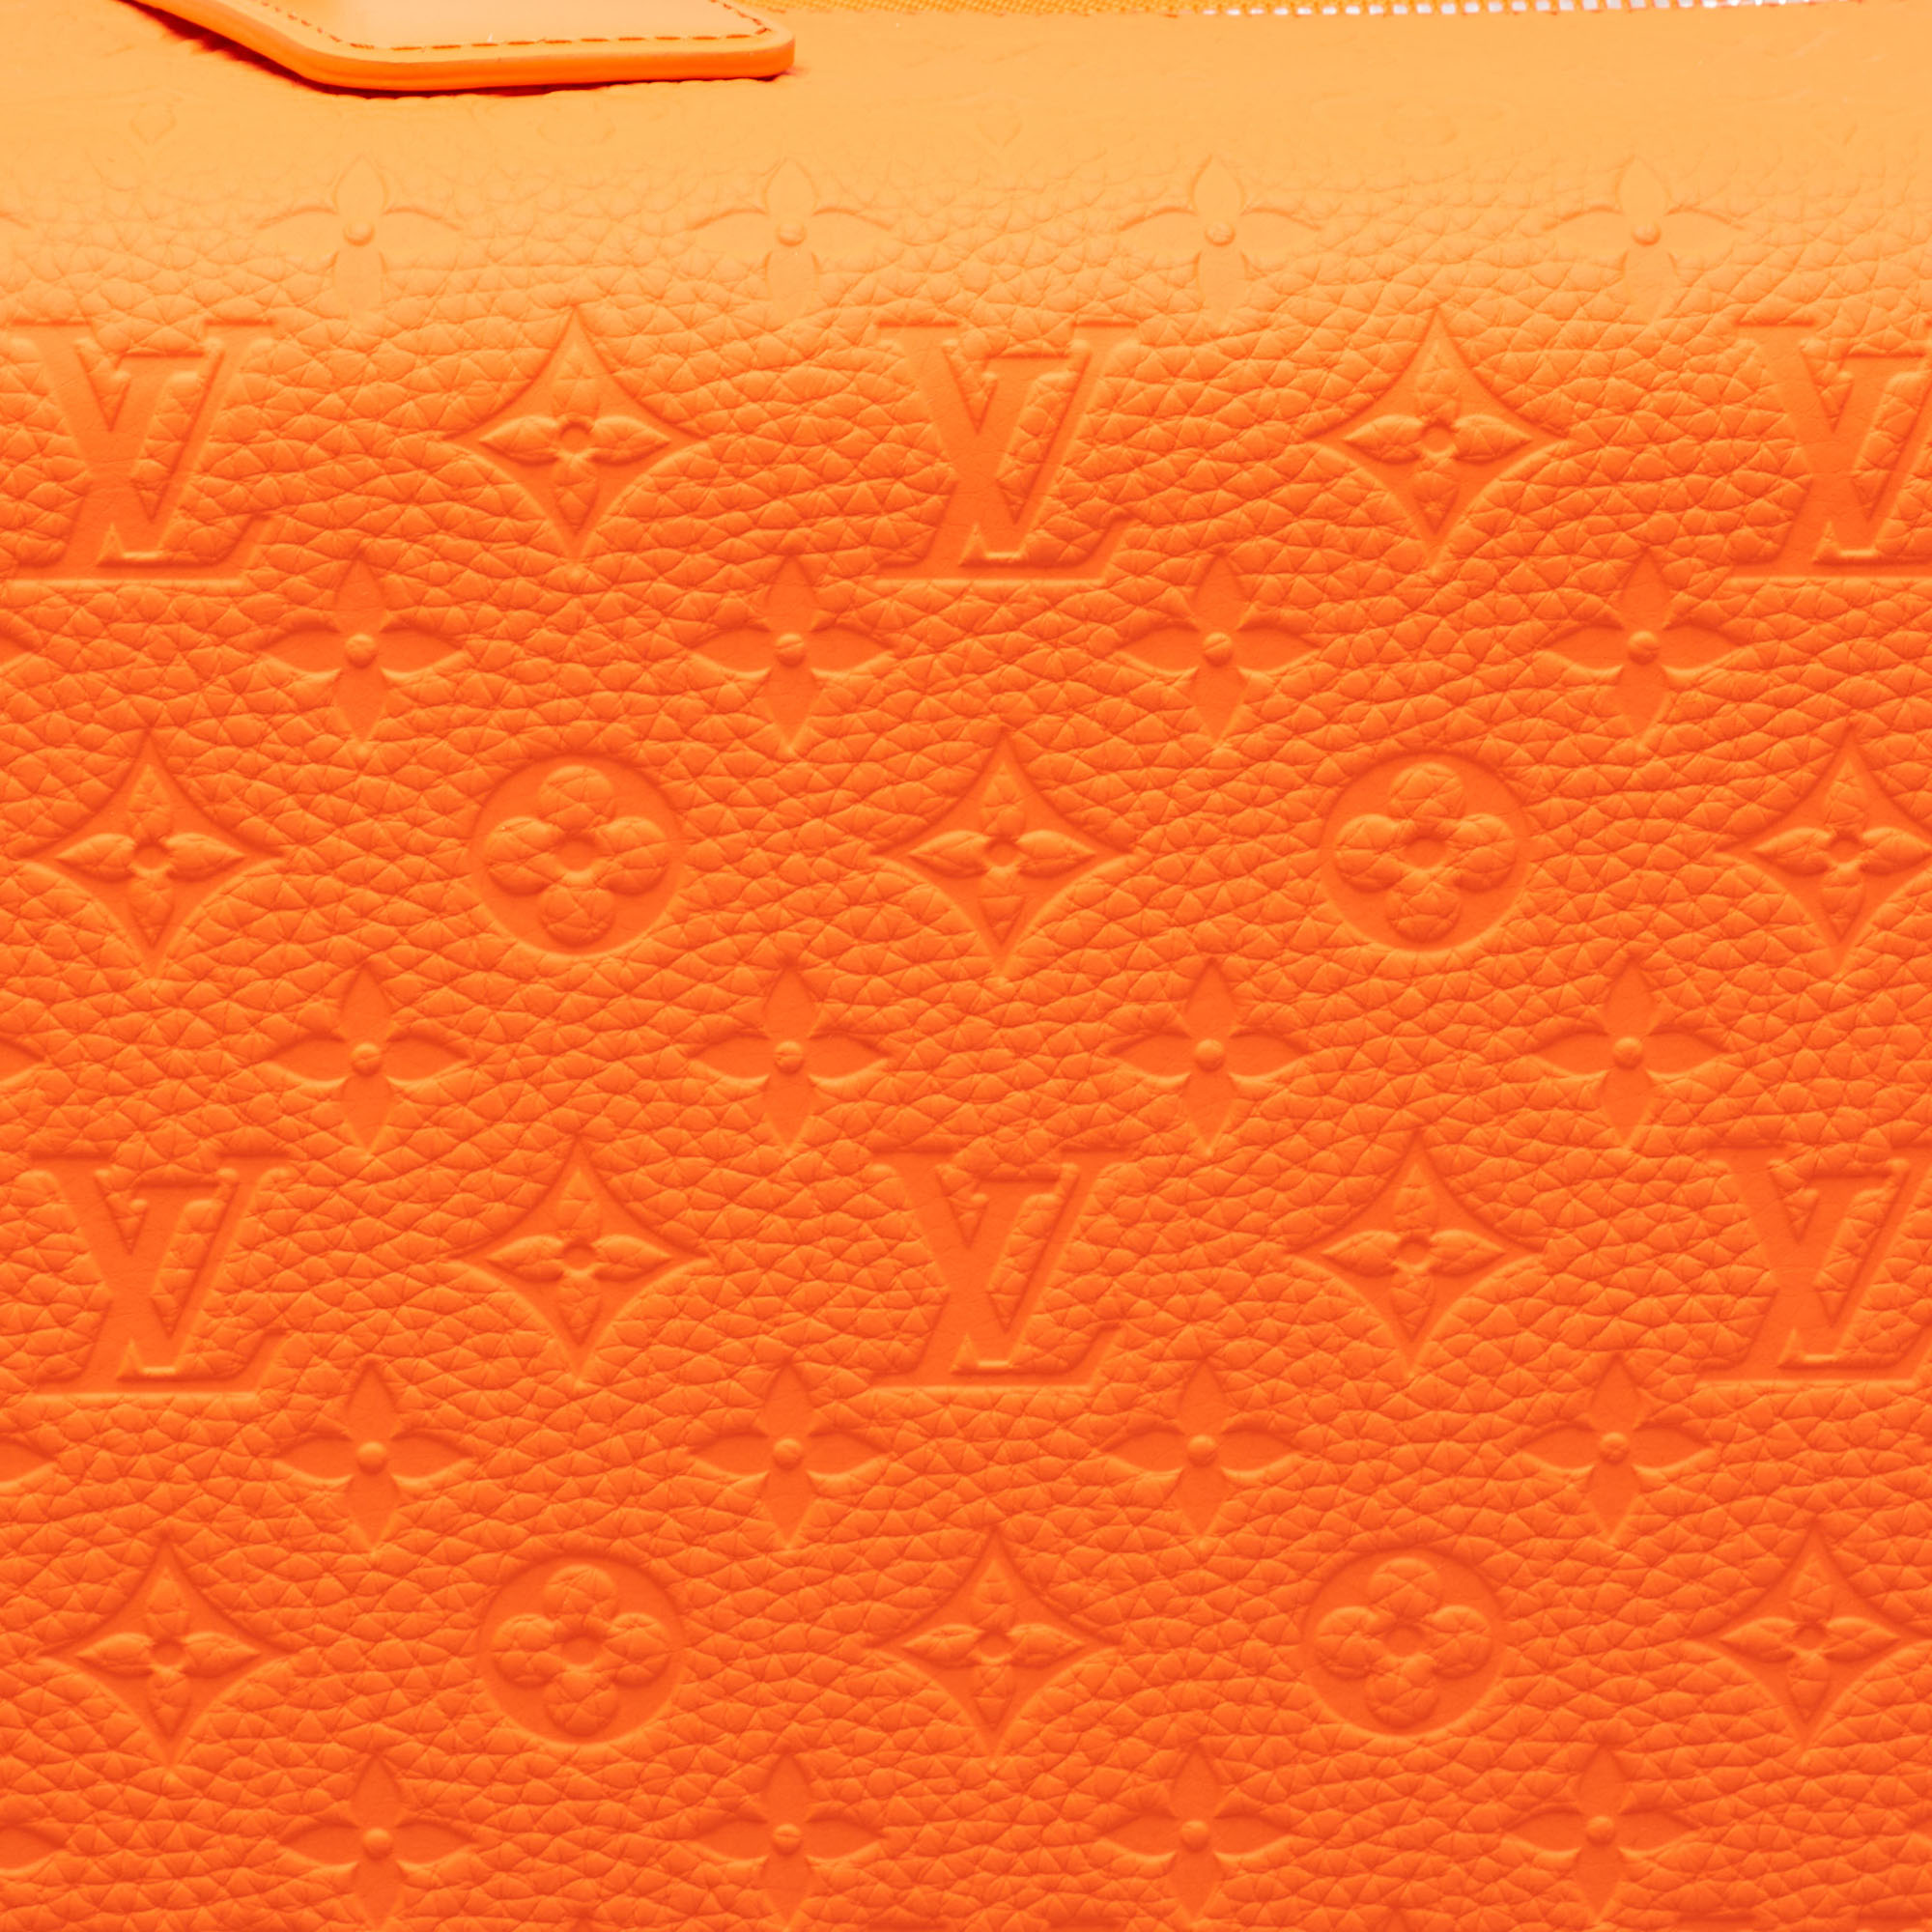 Louis Vuitton Orange Empreinte Leather Horizon 55 Suitcase